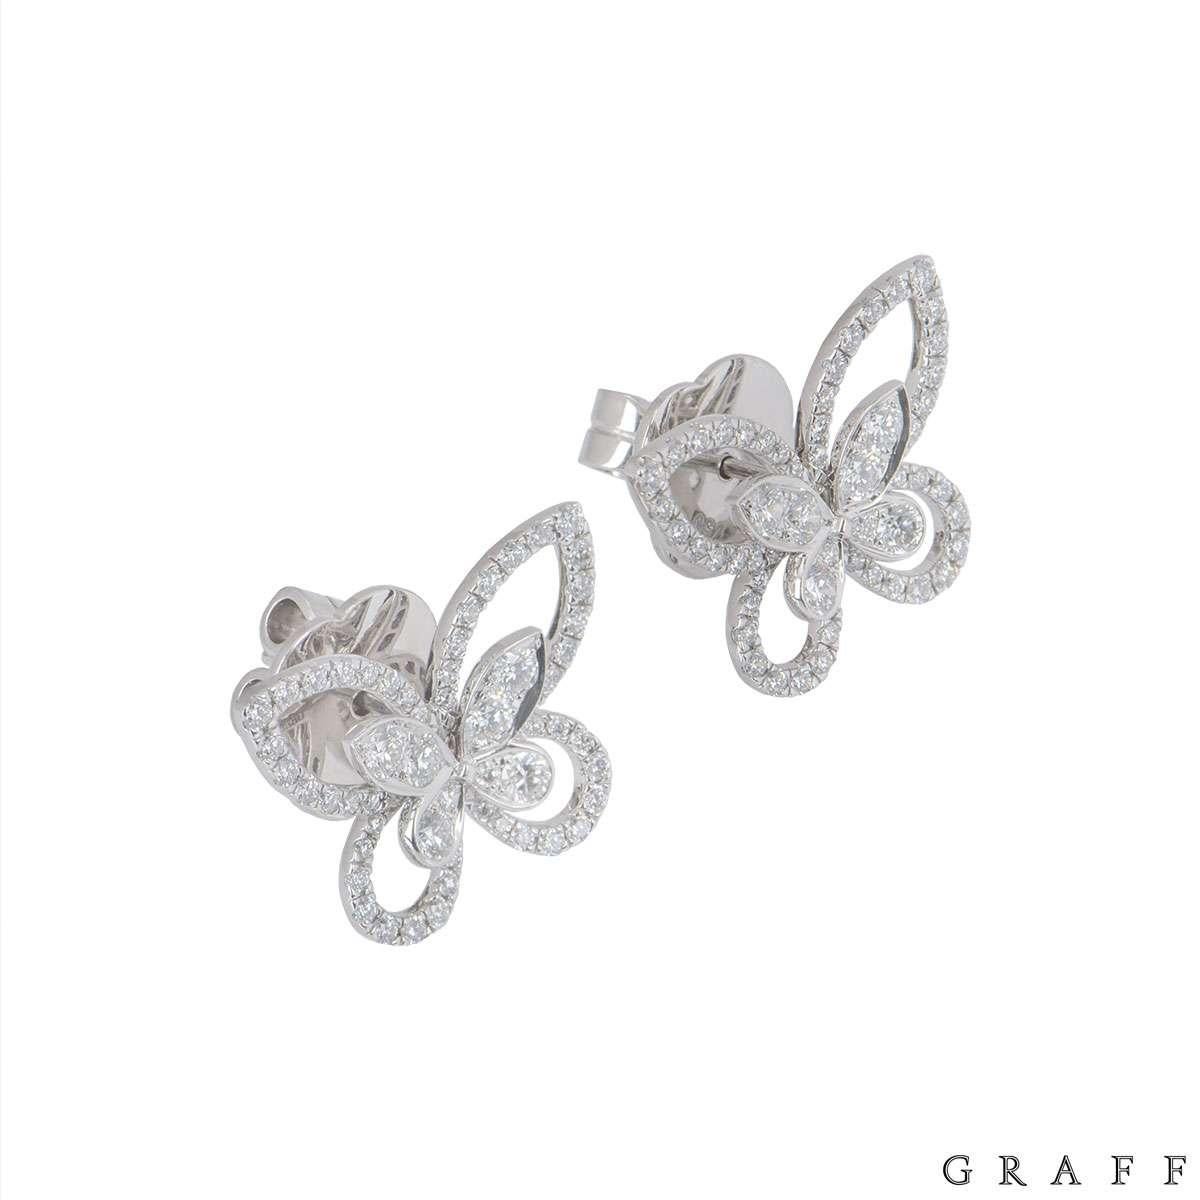 graff butterfly earrings